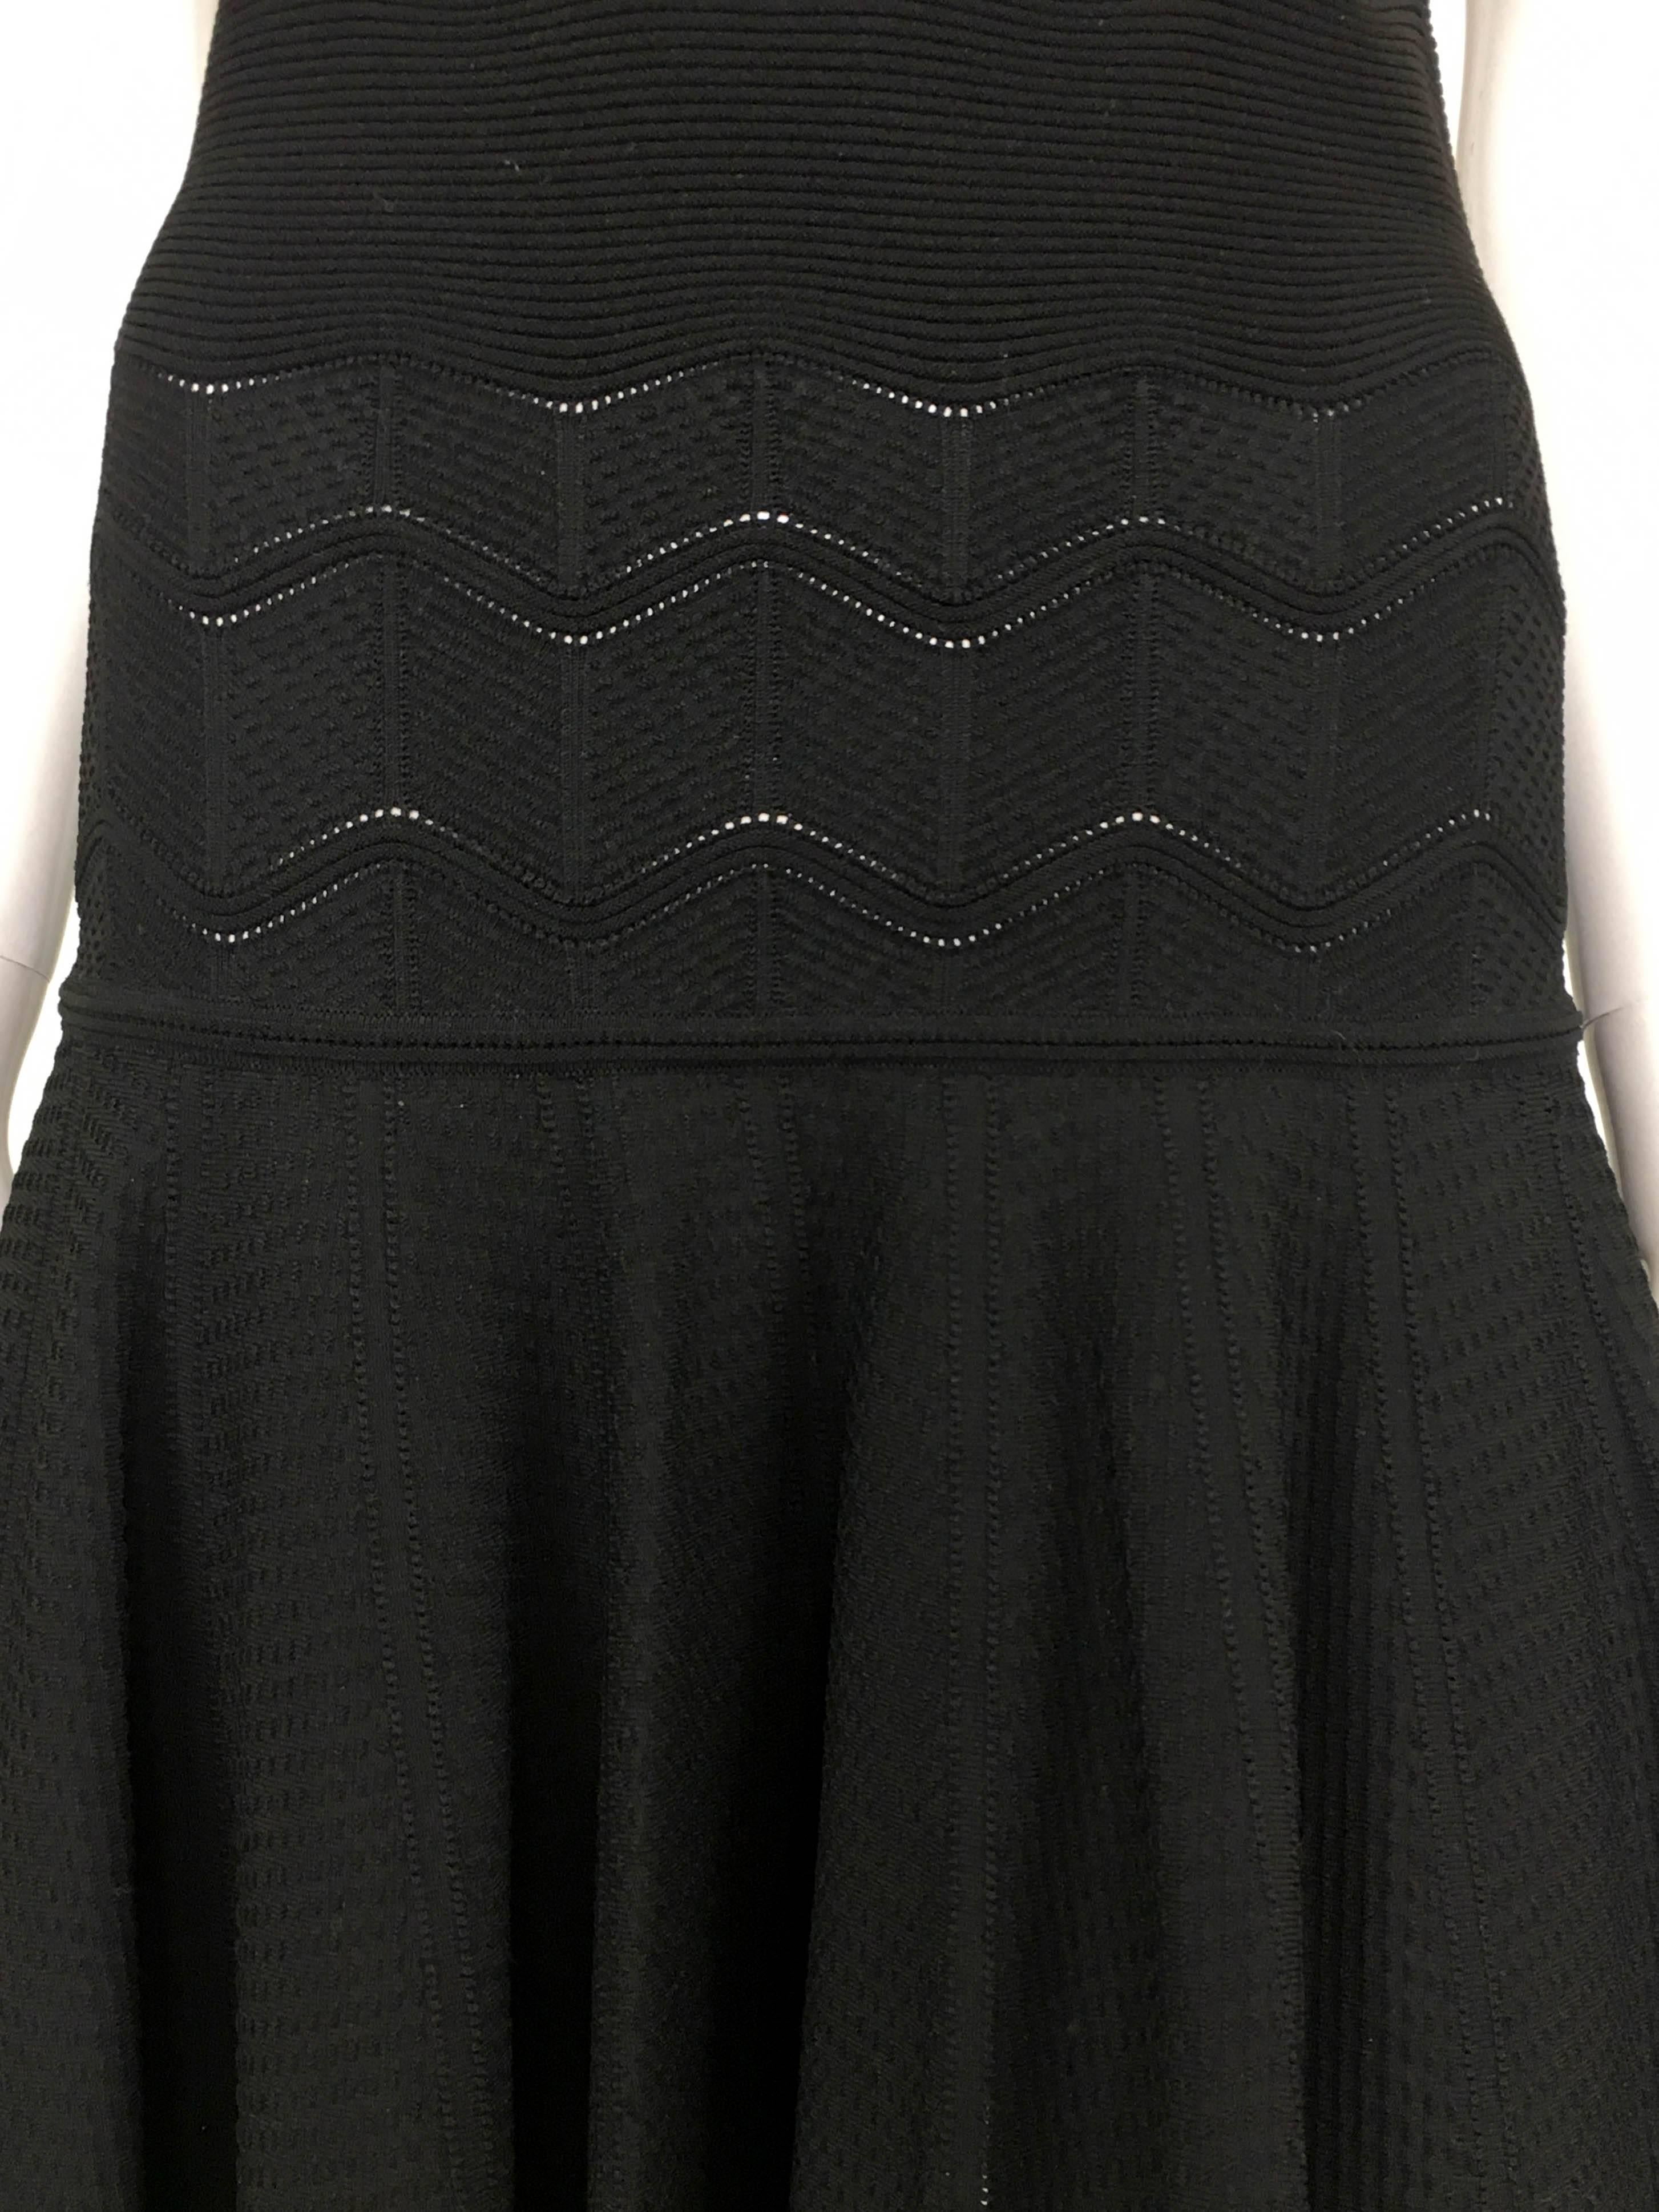 2010's Alexander McQueen Black Dress 5